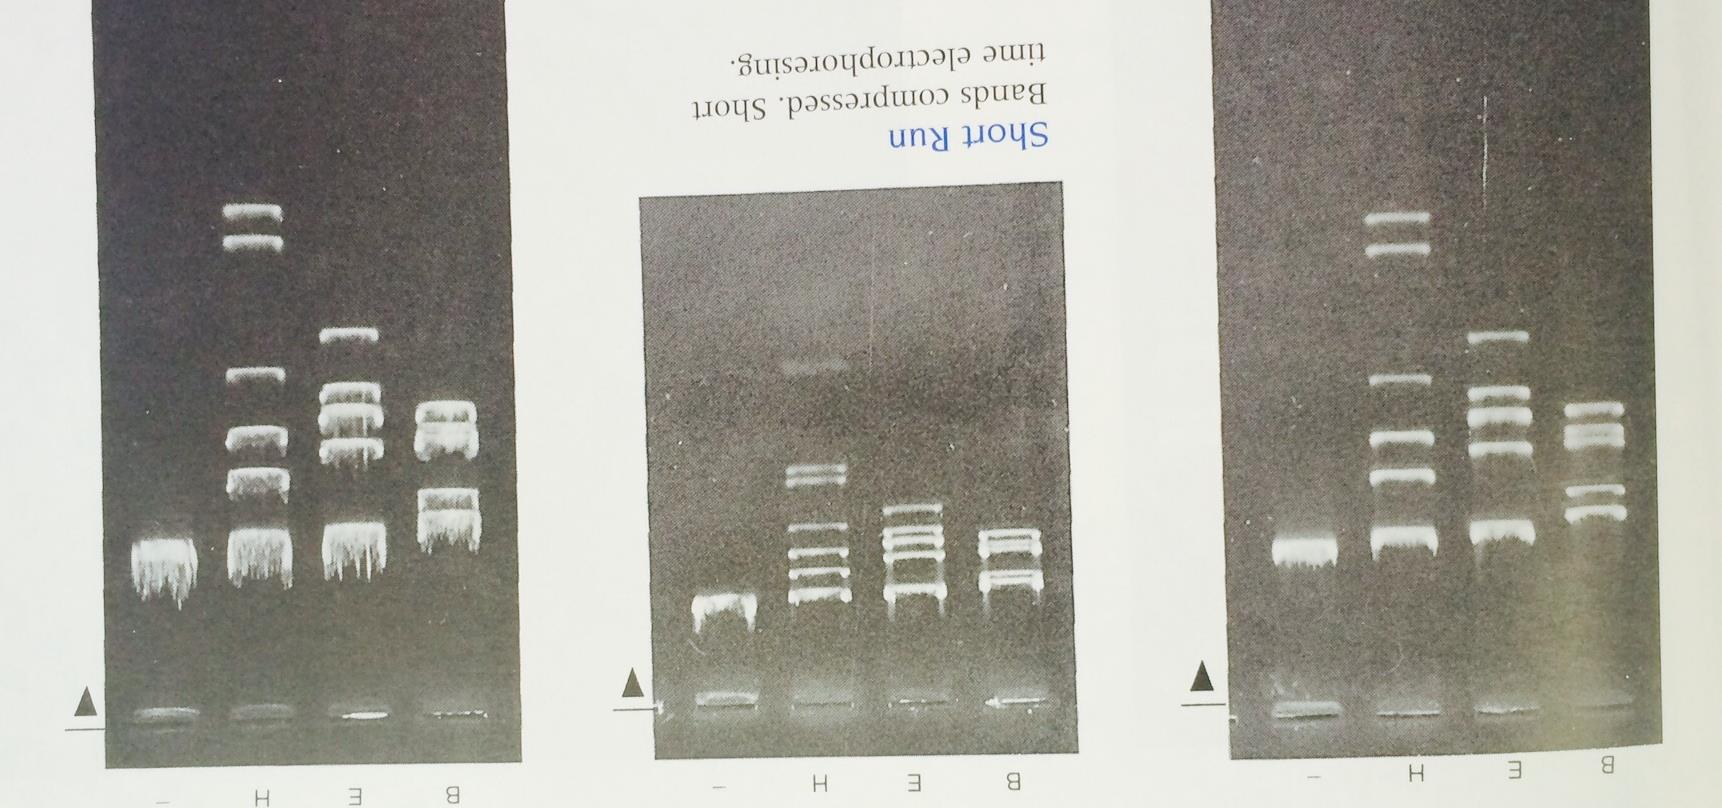 Diferentes perfiles de corrimiento del DNA del bacteriófago lambda digerido con diferentes enzimas de